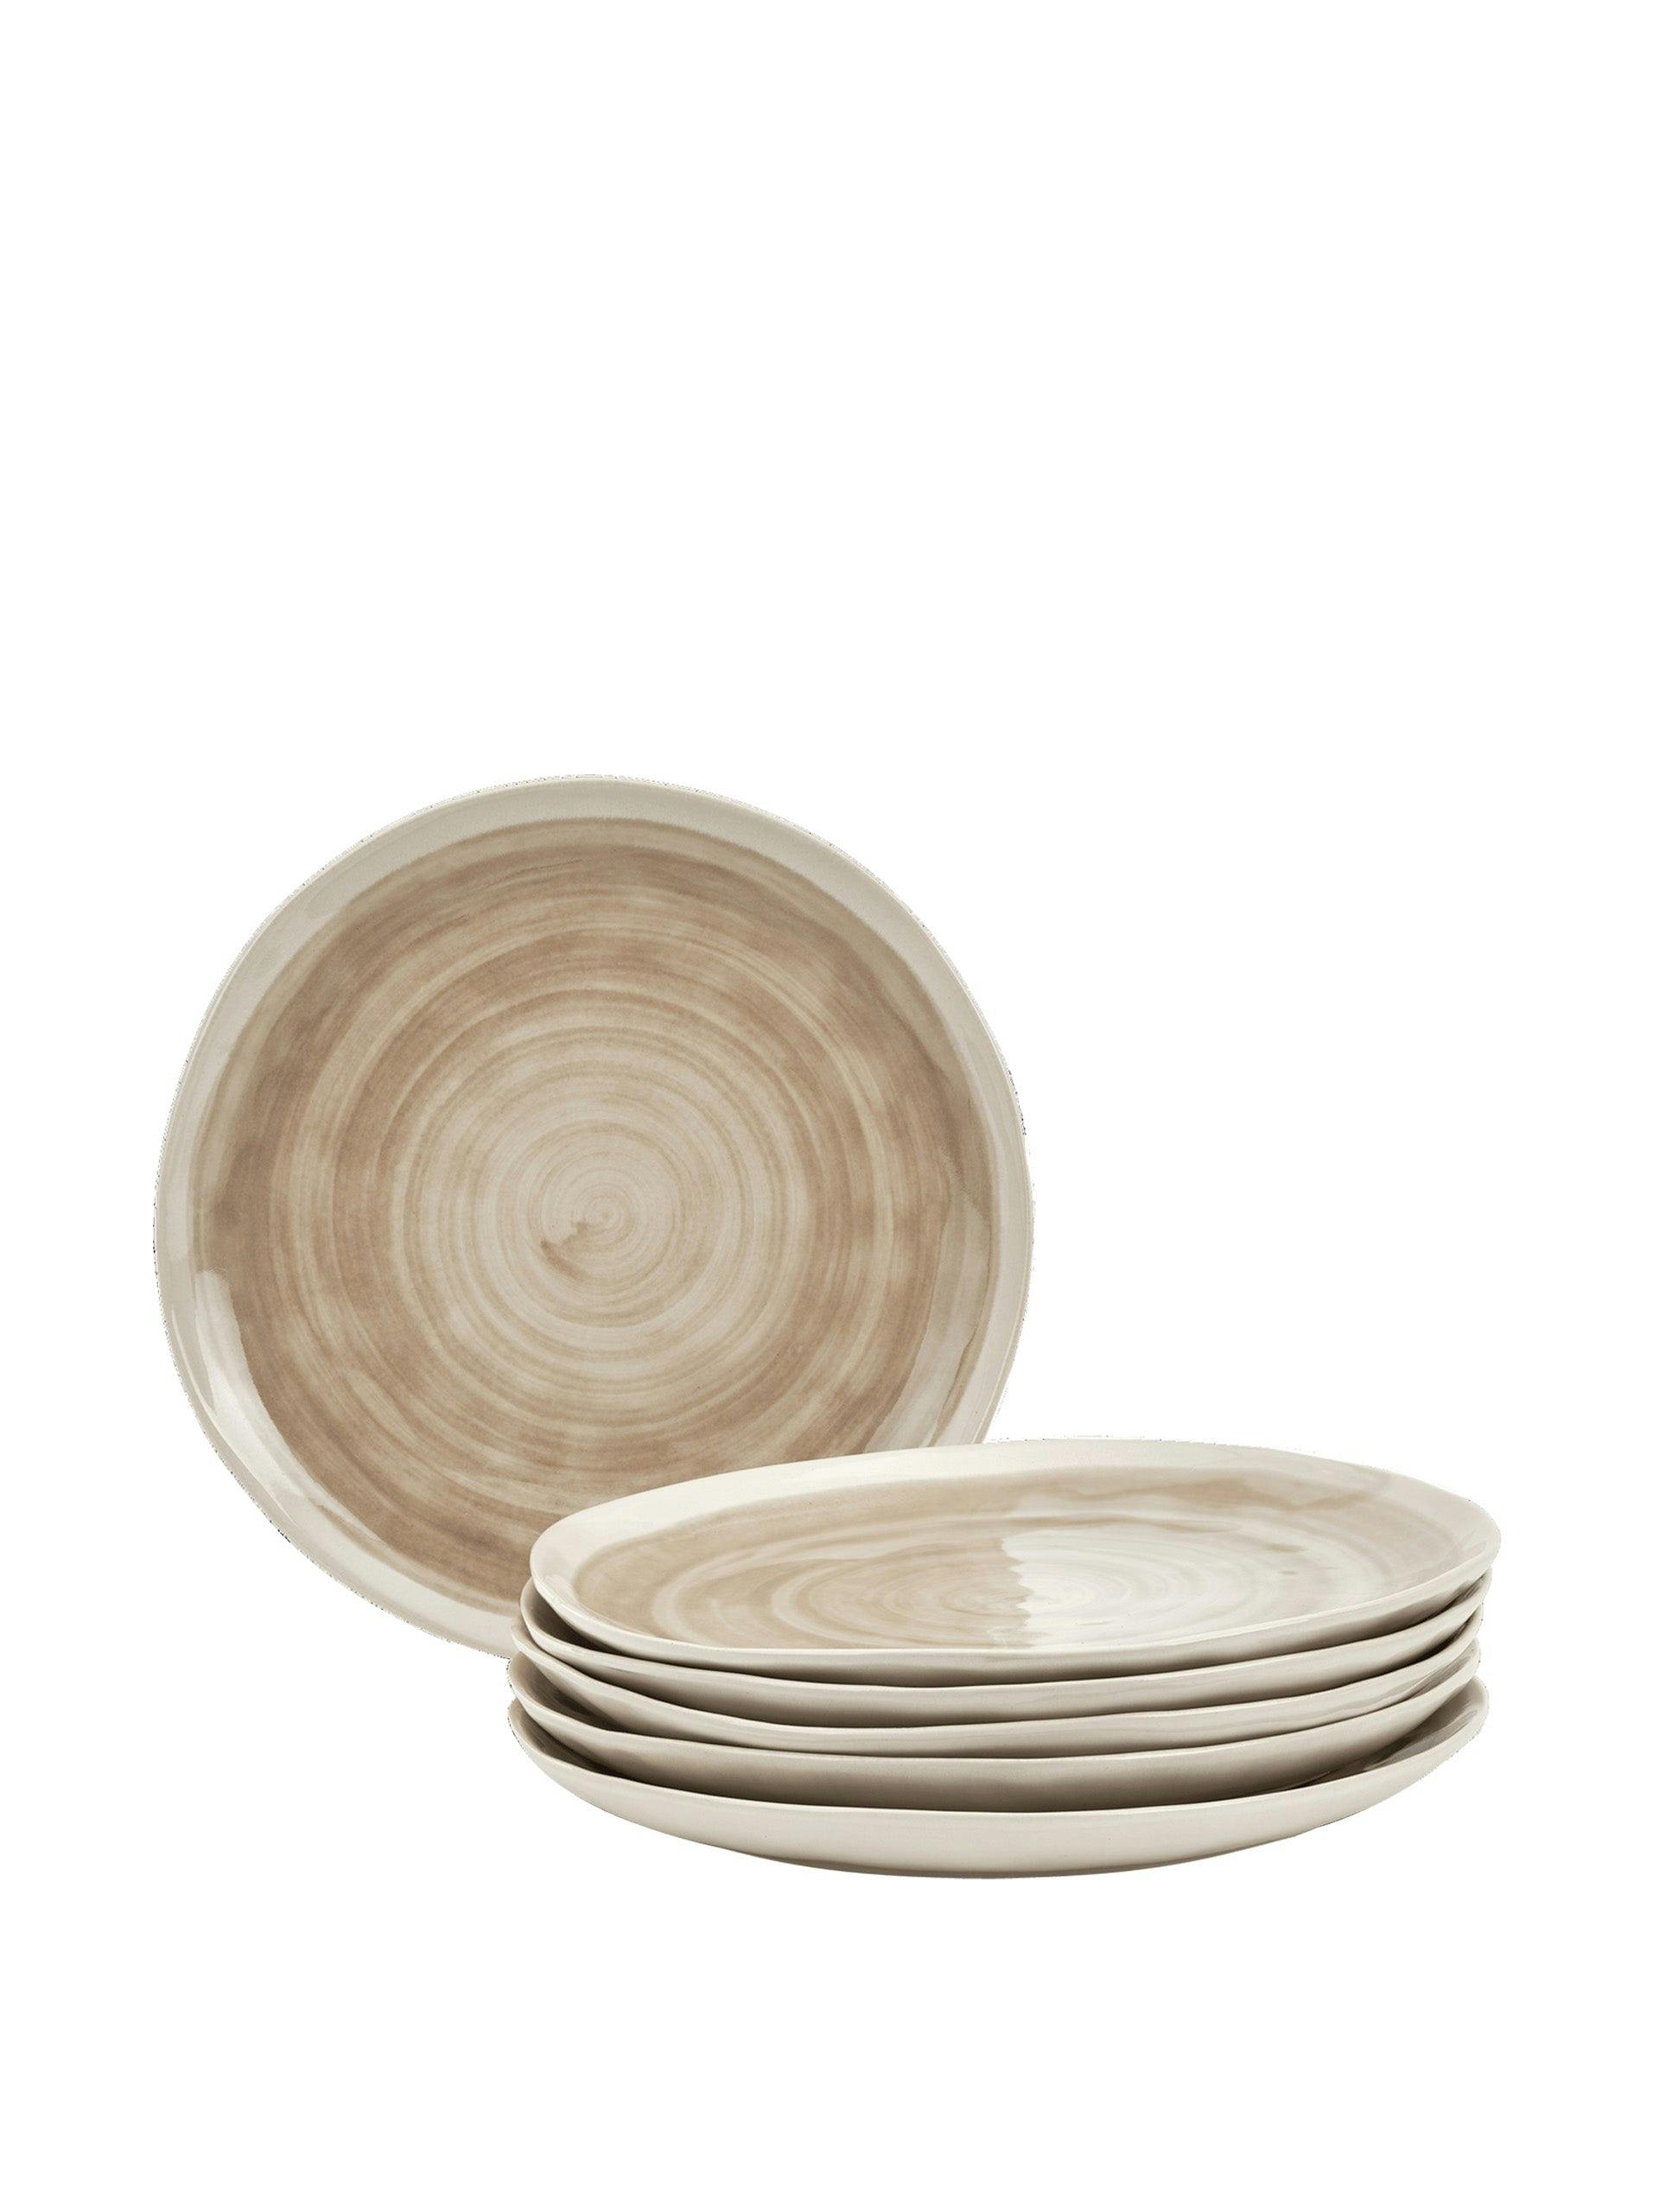 Lulworth side plates (set of 6)